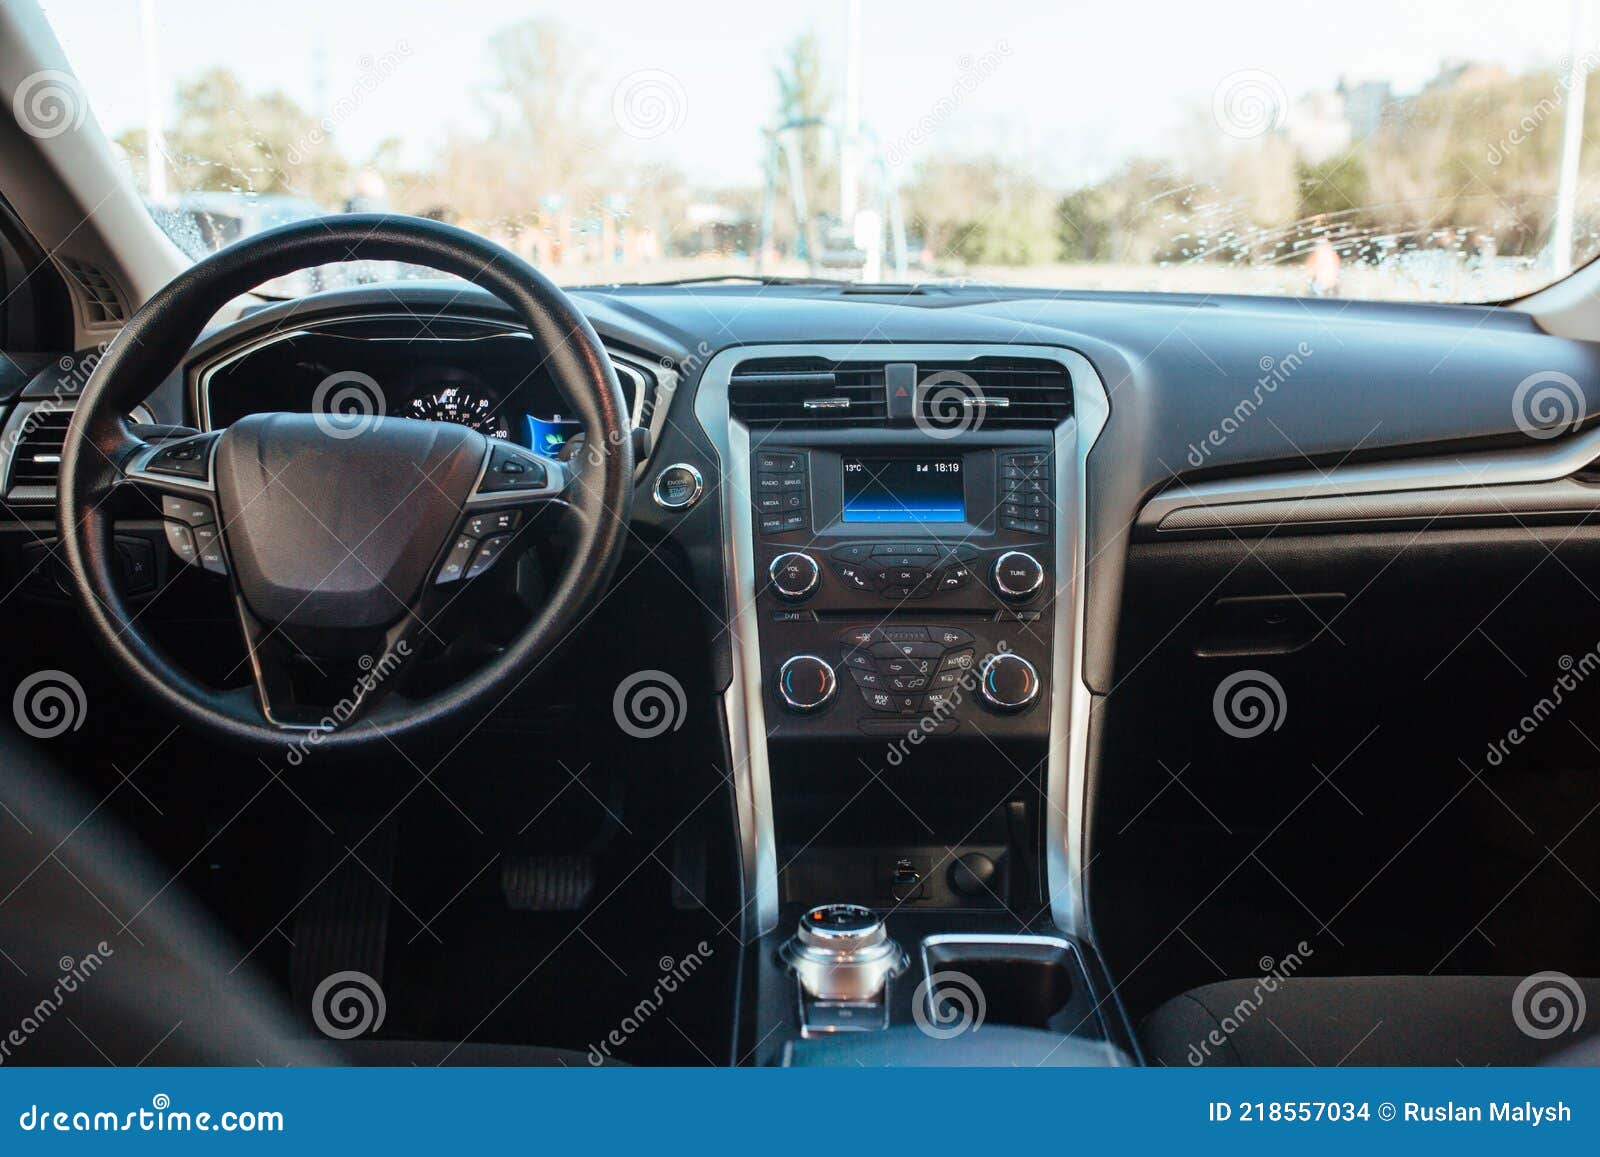 Panel de control de luz interior de coche de lujo